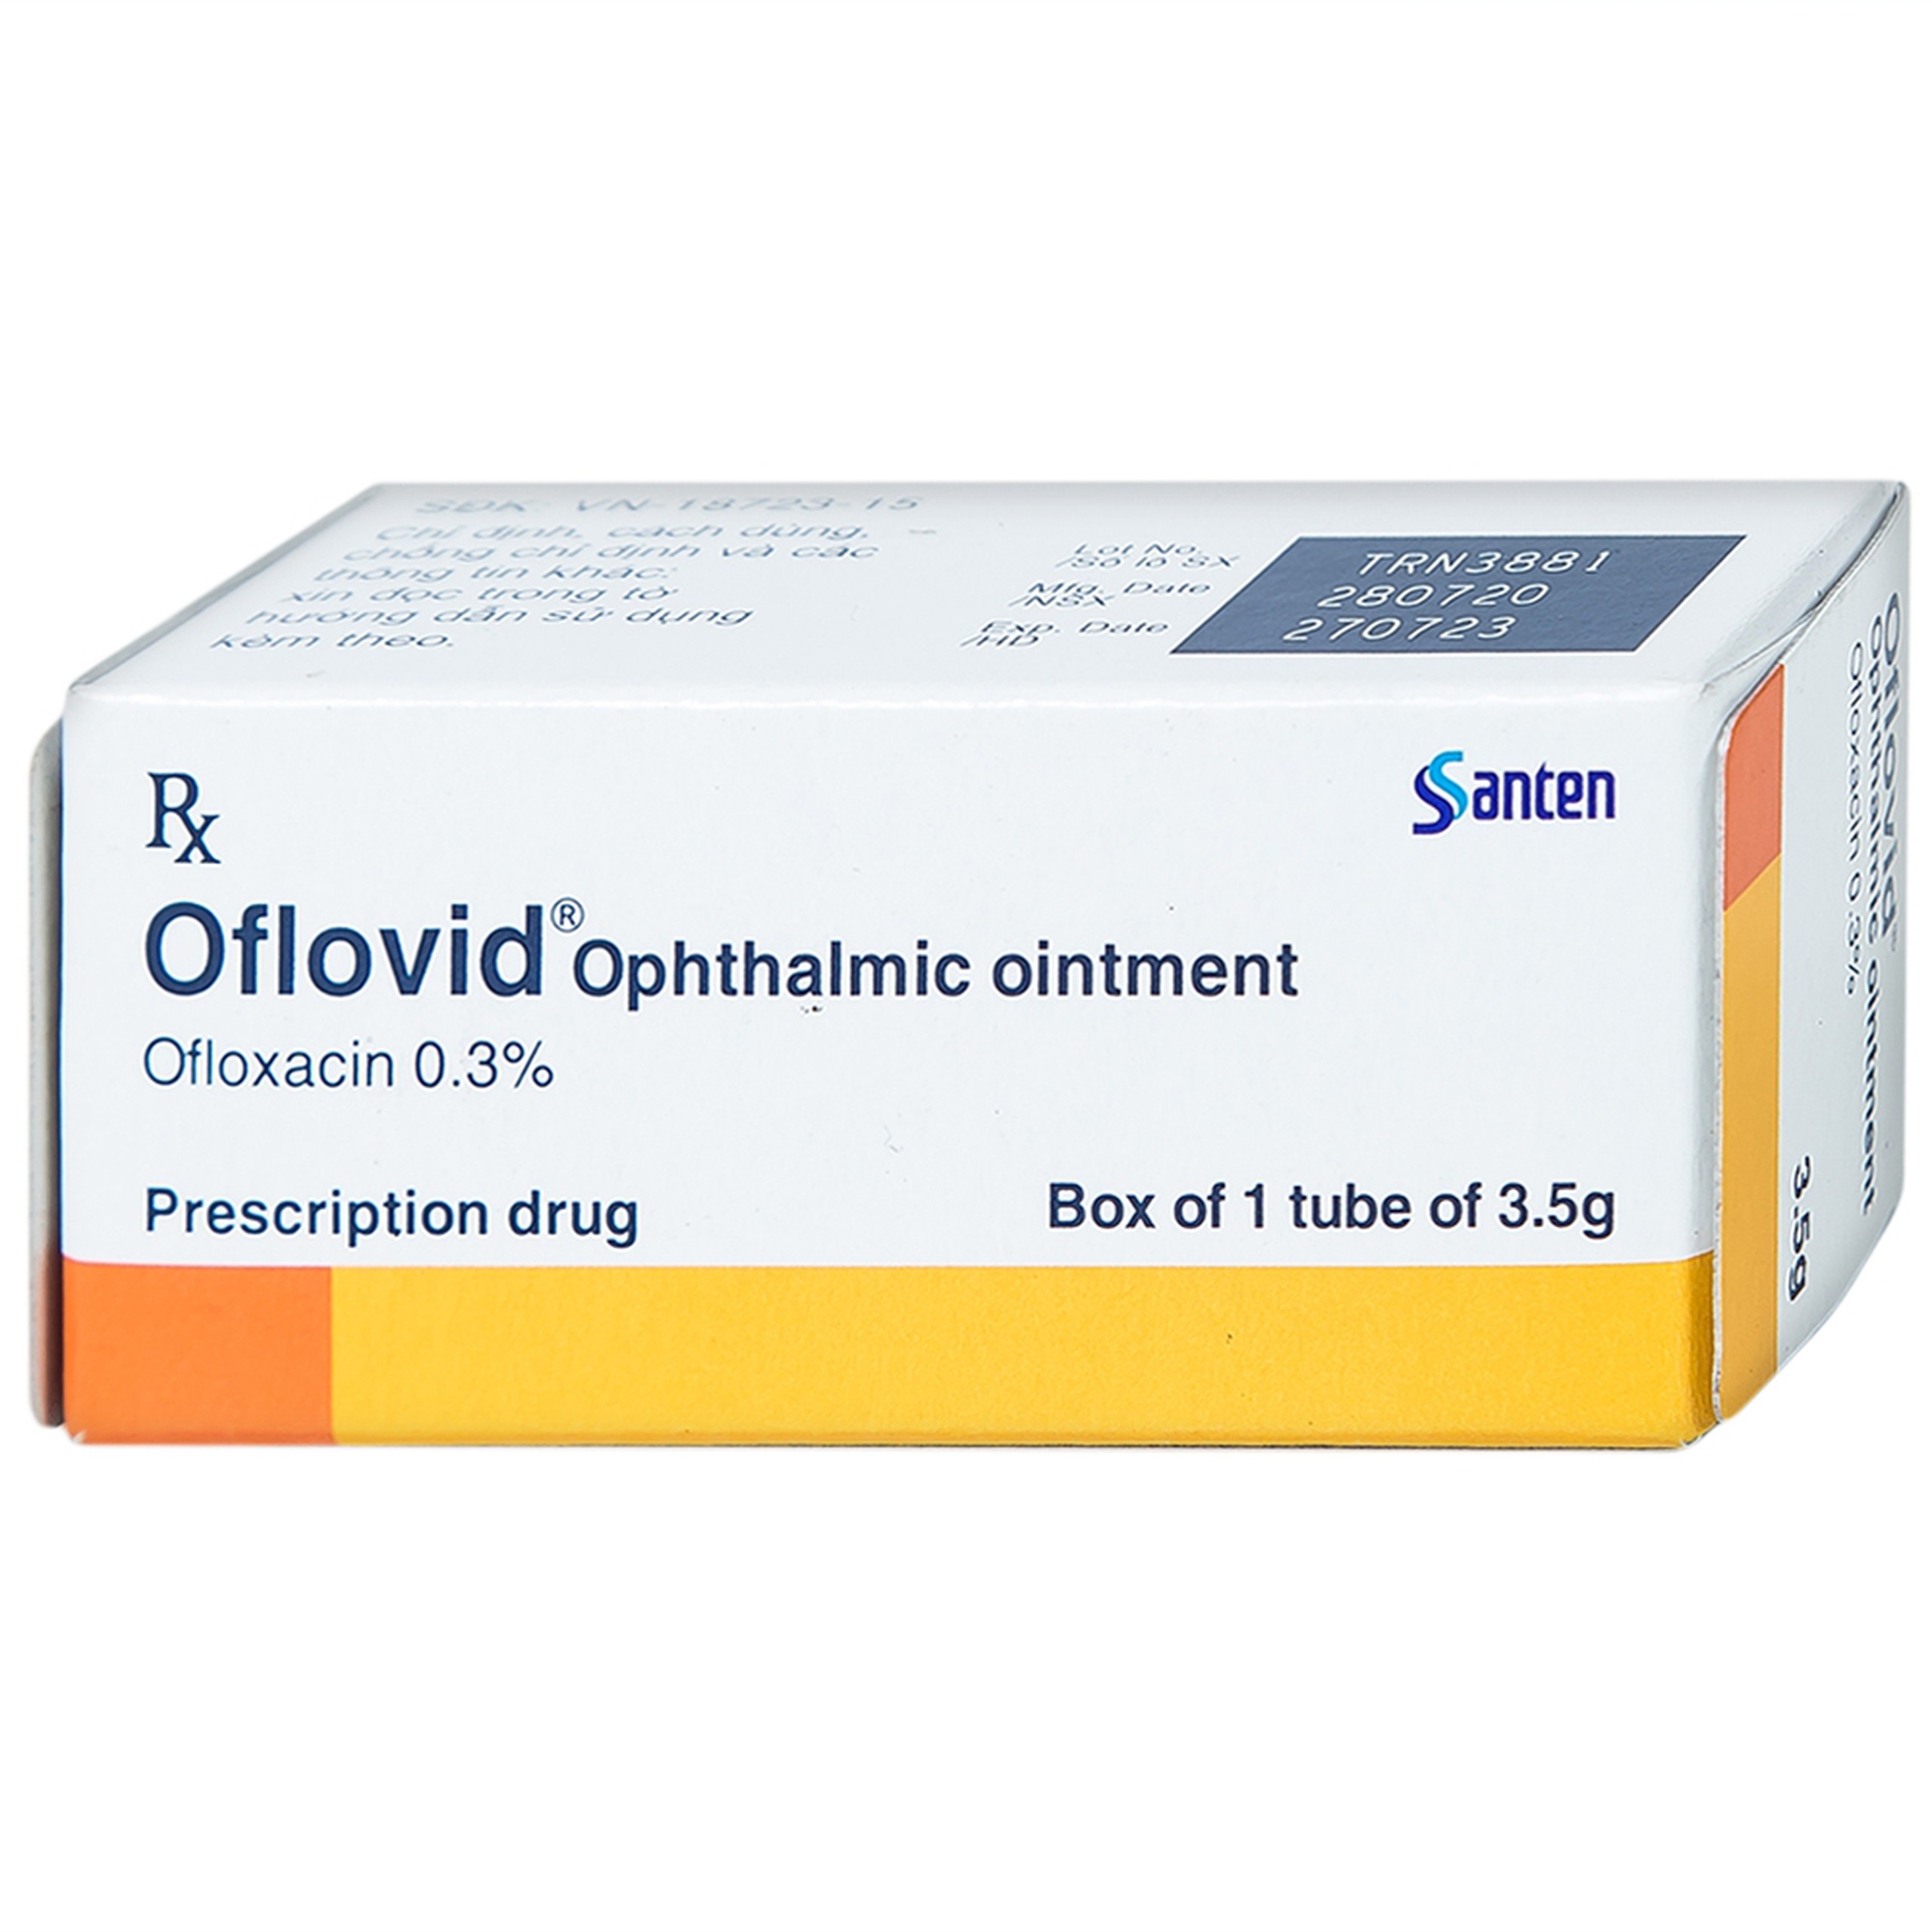 Thuốc mỡ tra mắt Oflovid Ophthalmic ointment Santen điều trị viêm bờ mi, viêm túi lệ, lẹo (3.5g)